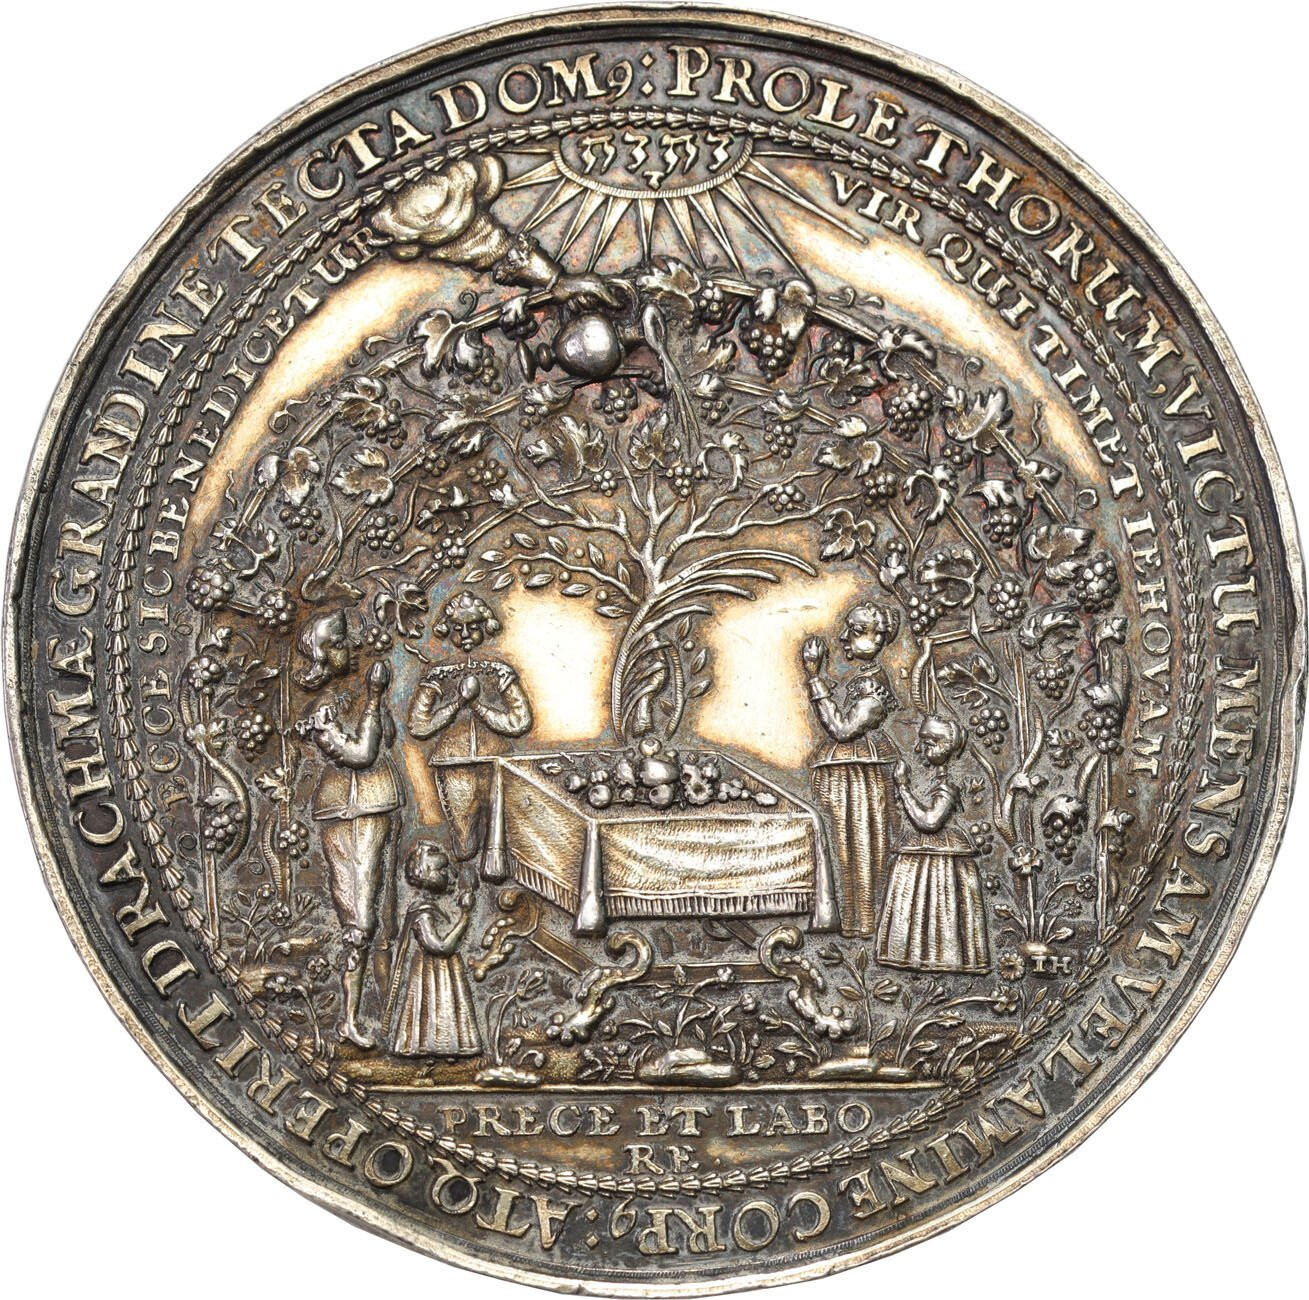 Władysław IV Waza. Medal zaślubinowy, Jan Höhn, Gdańsk, srebro - PIĘKNY